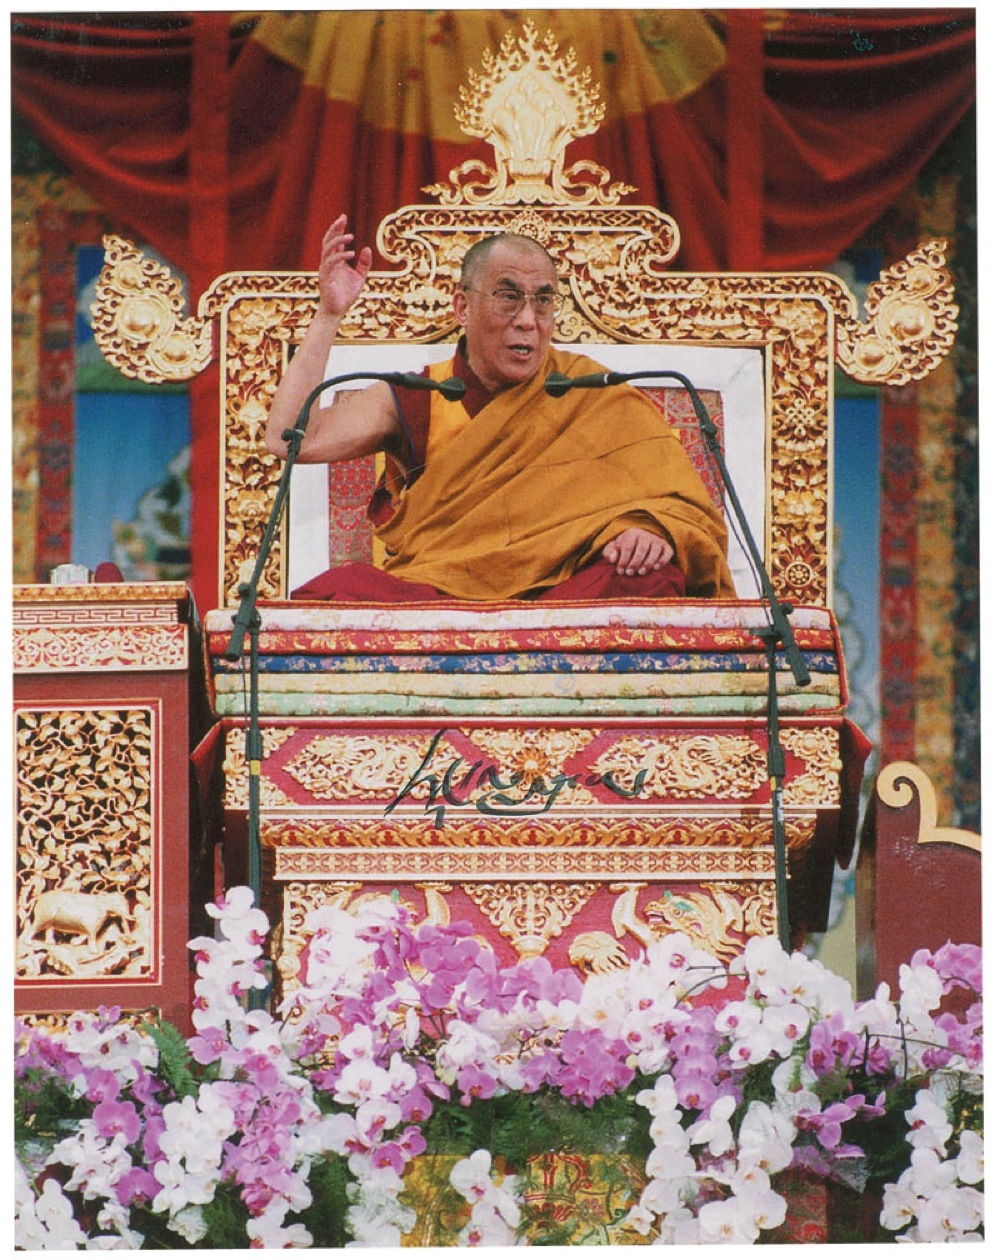 Lot #193 Dalai Lama